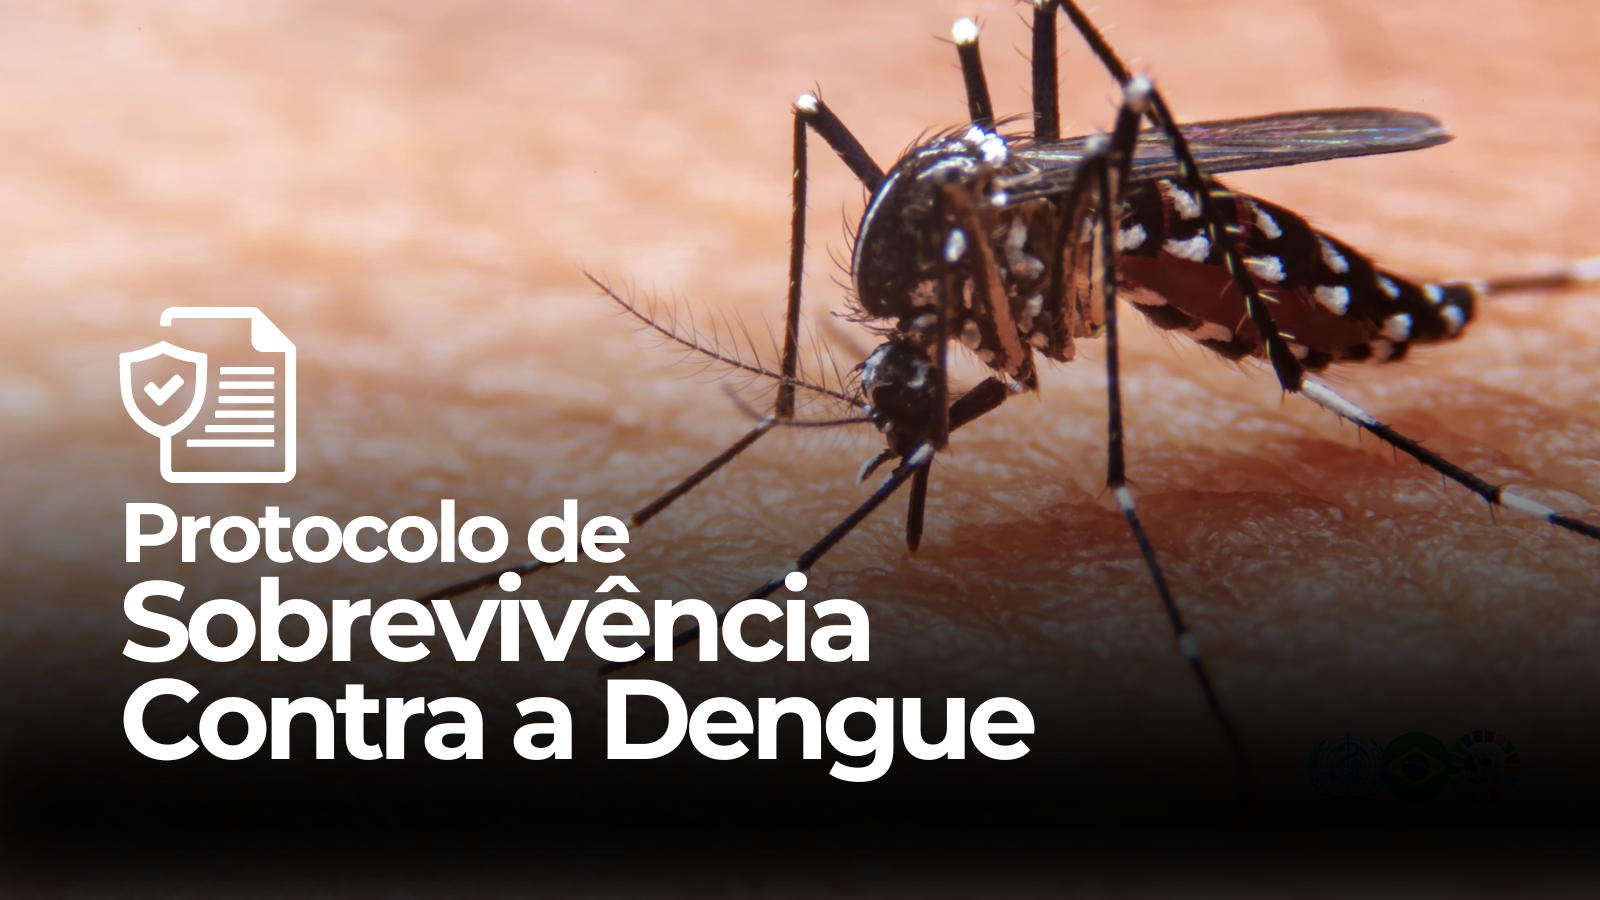 Protocolo contra a Dengue tem ajudado inúmeras pessoas.